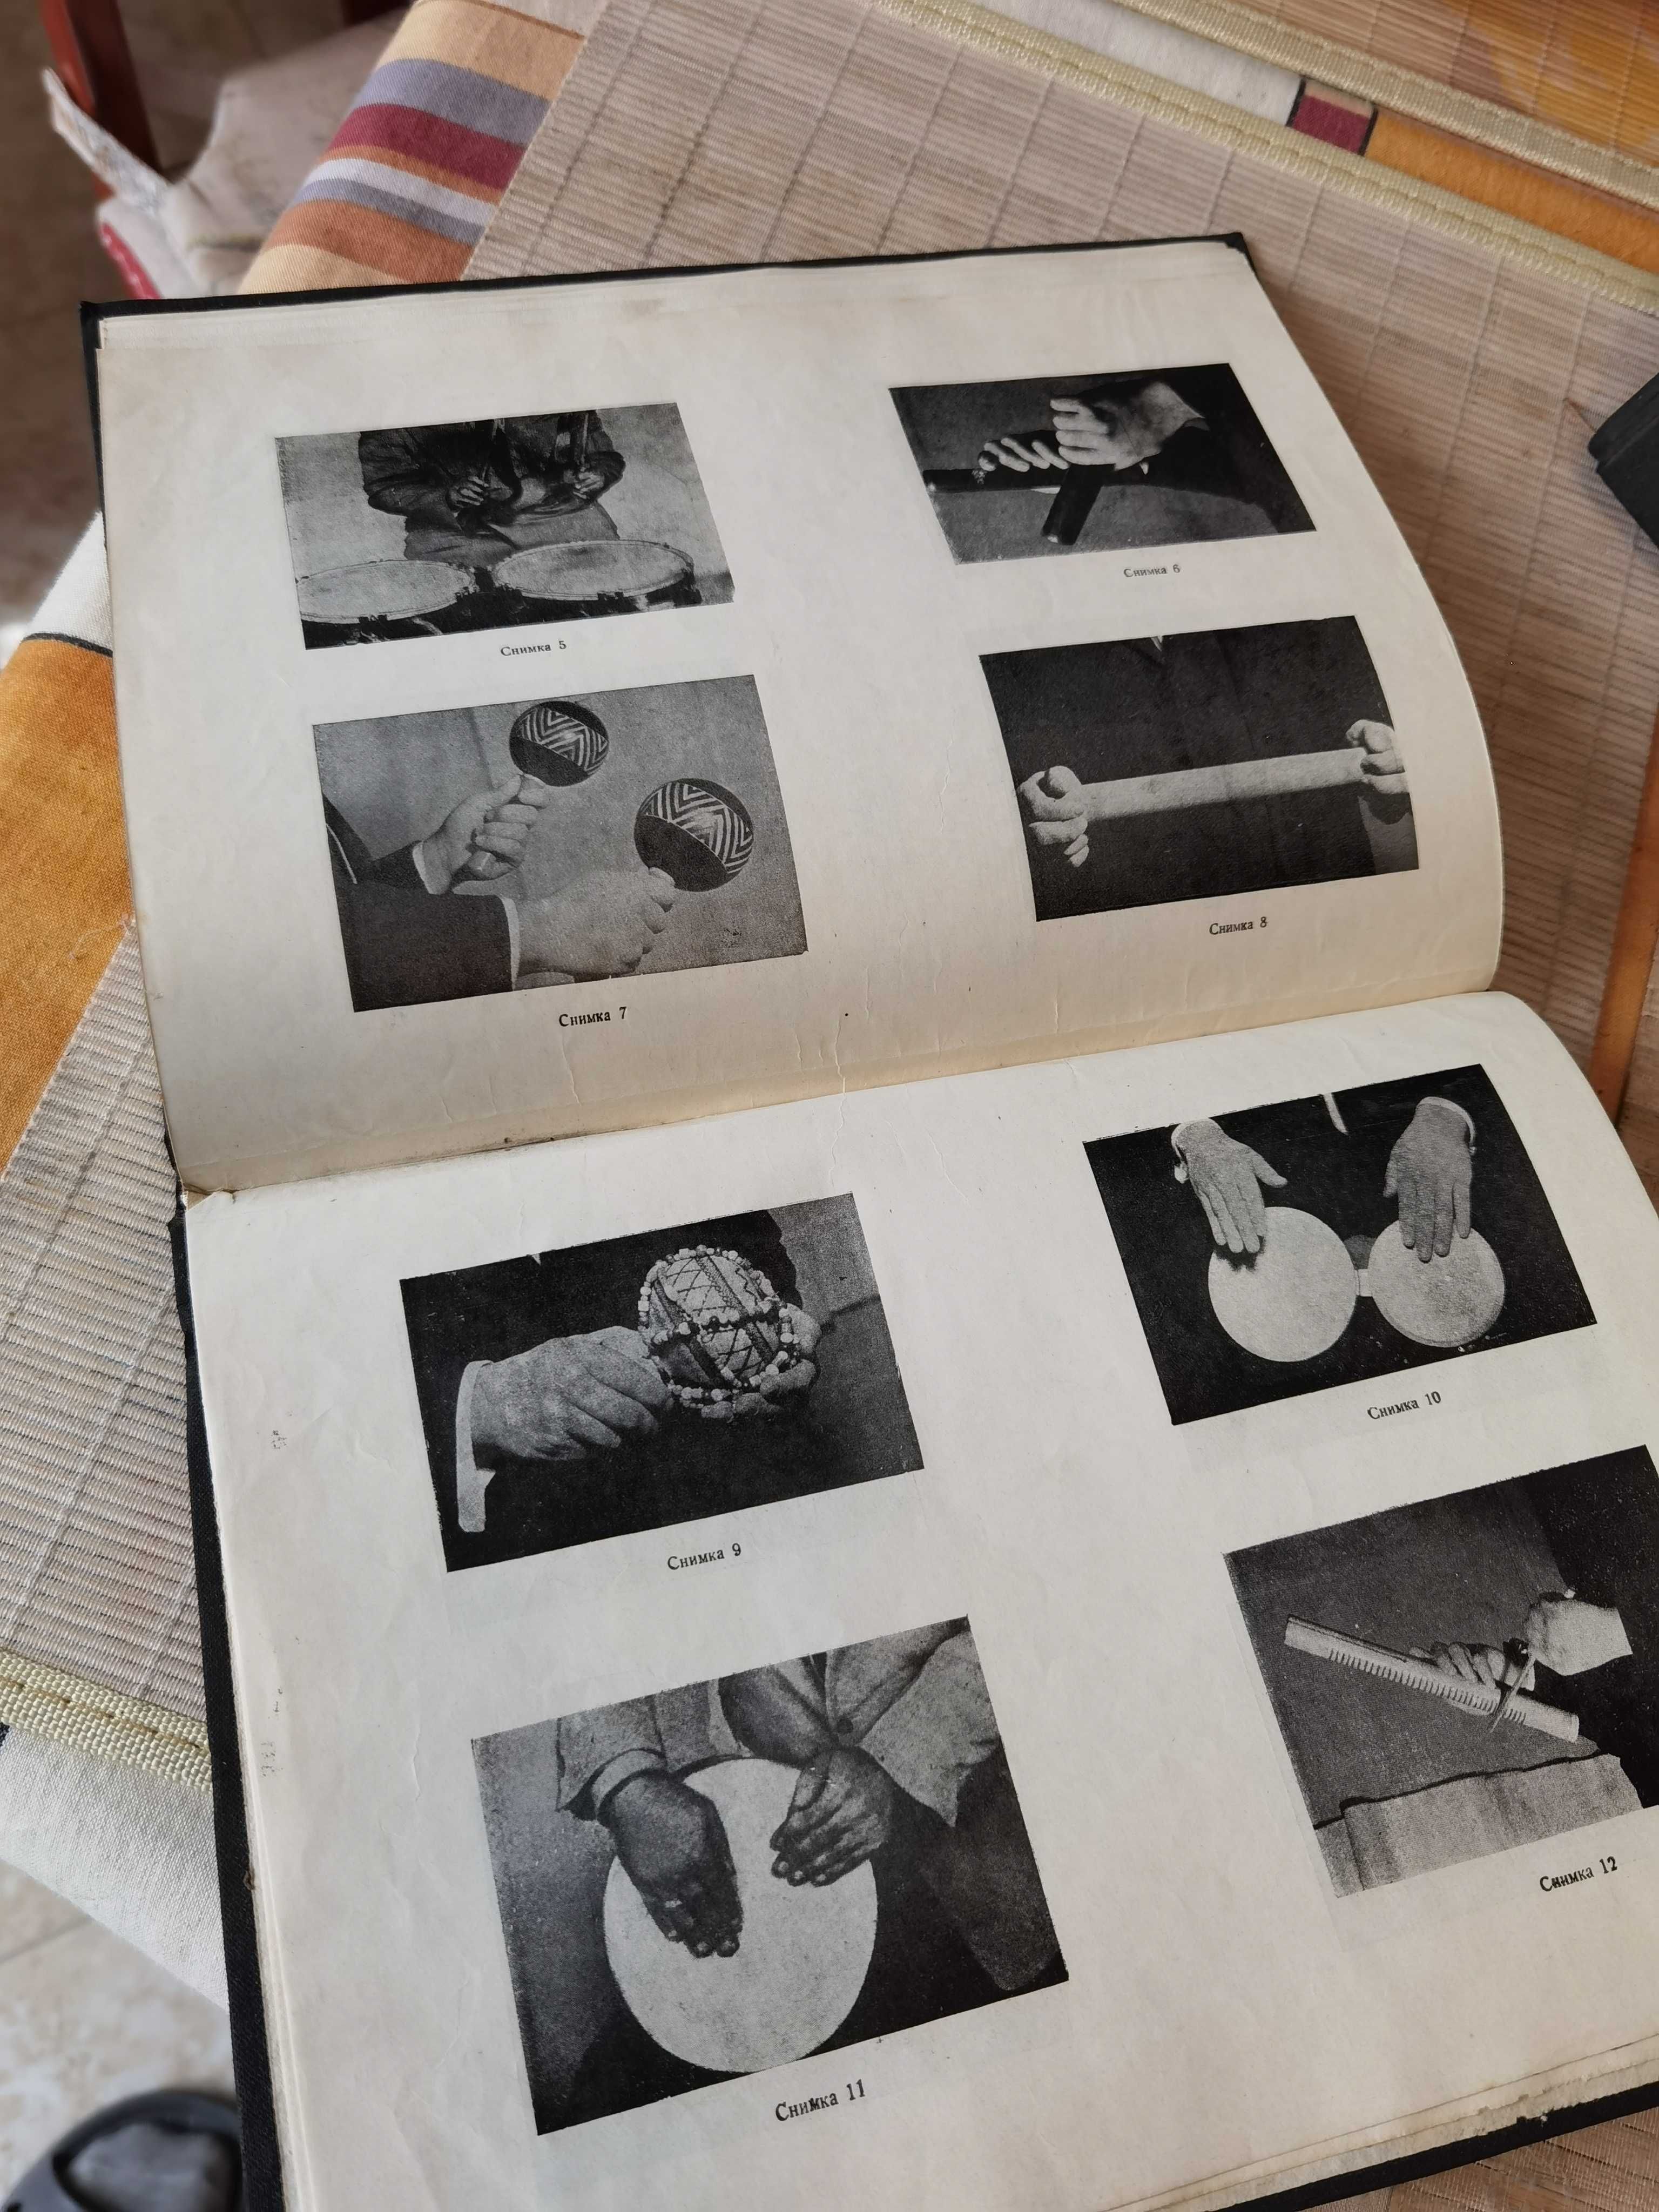 Книга Систематичен Курс По Ударни Инструменти 1965 г от Добри Палиев